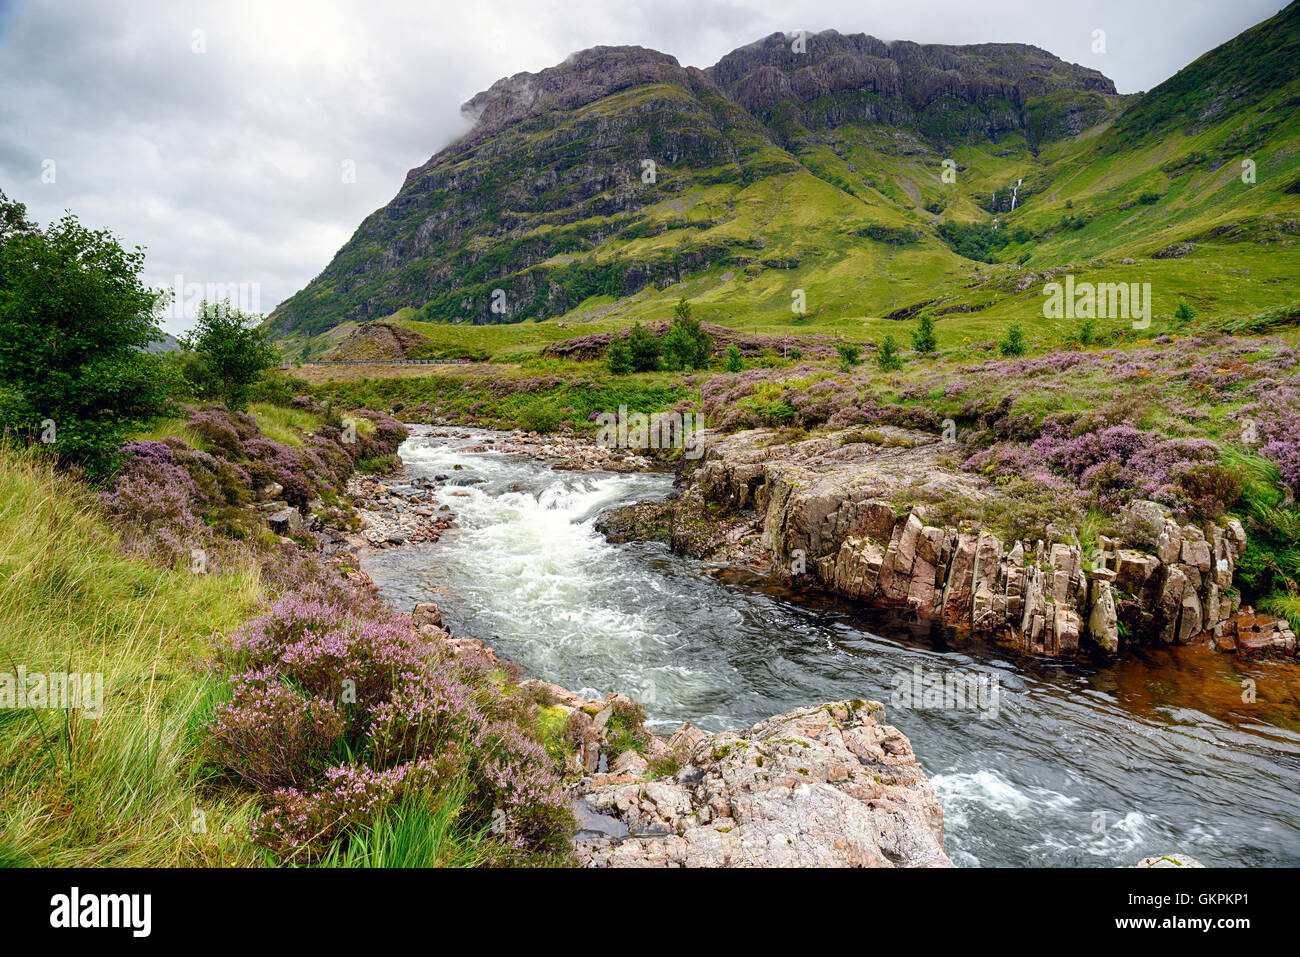 La rivière de l'Europe à travers la vallée en dessous de montagnes à Glencoe dans les Highlands écossais Banque D'Images